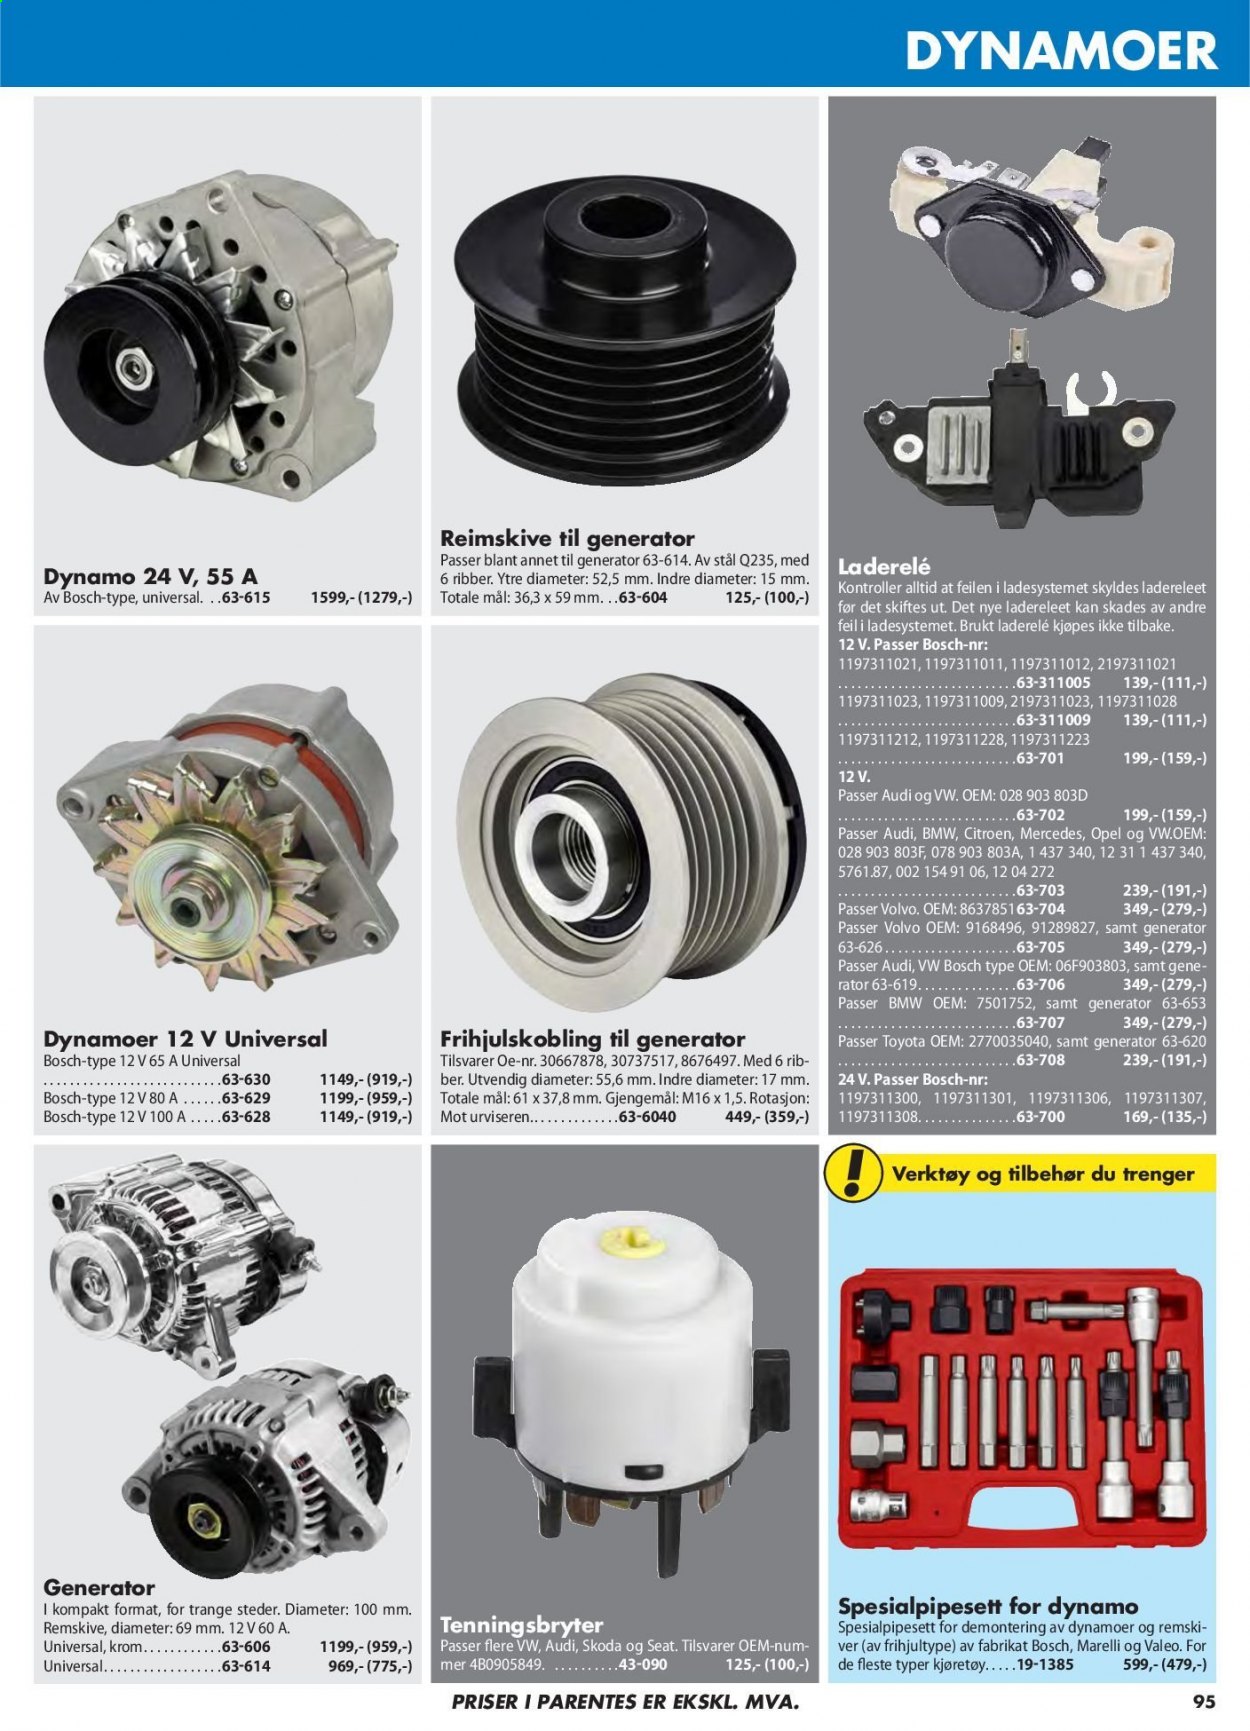 thumbnail - Kundeavis Biltema - Produkter fra tilbudsaviser - kontroller, Bosch, verktøy. Side 95.